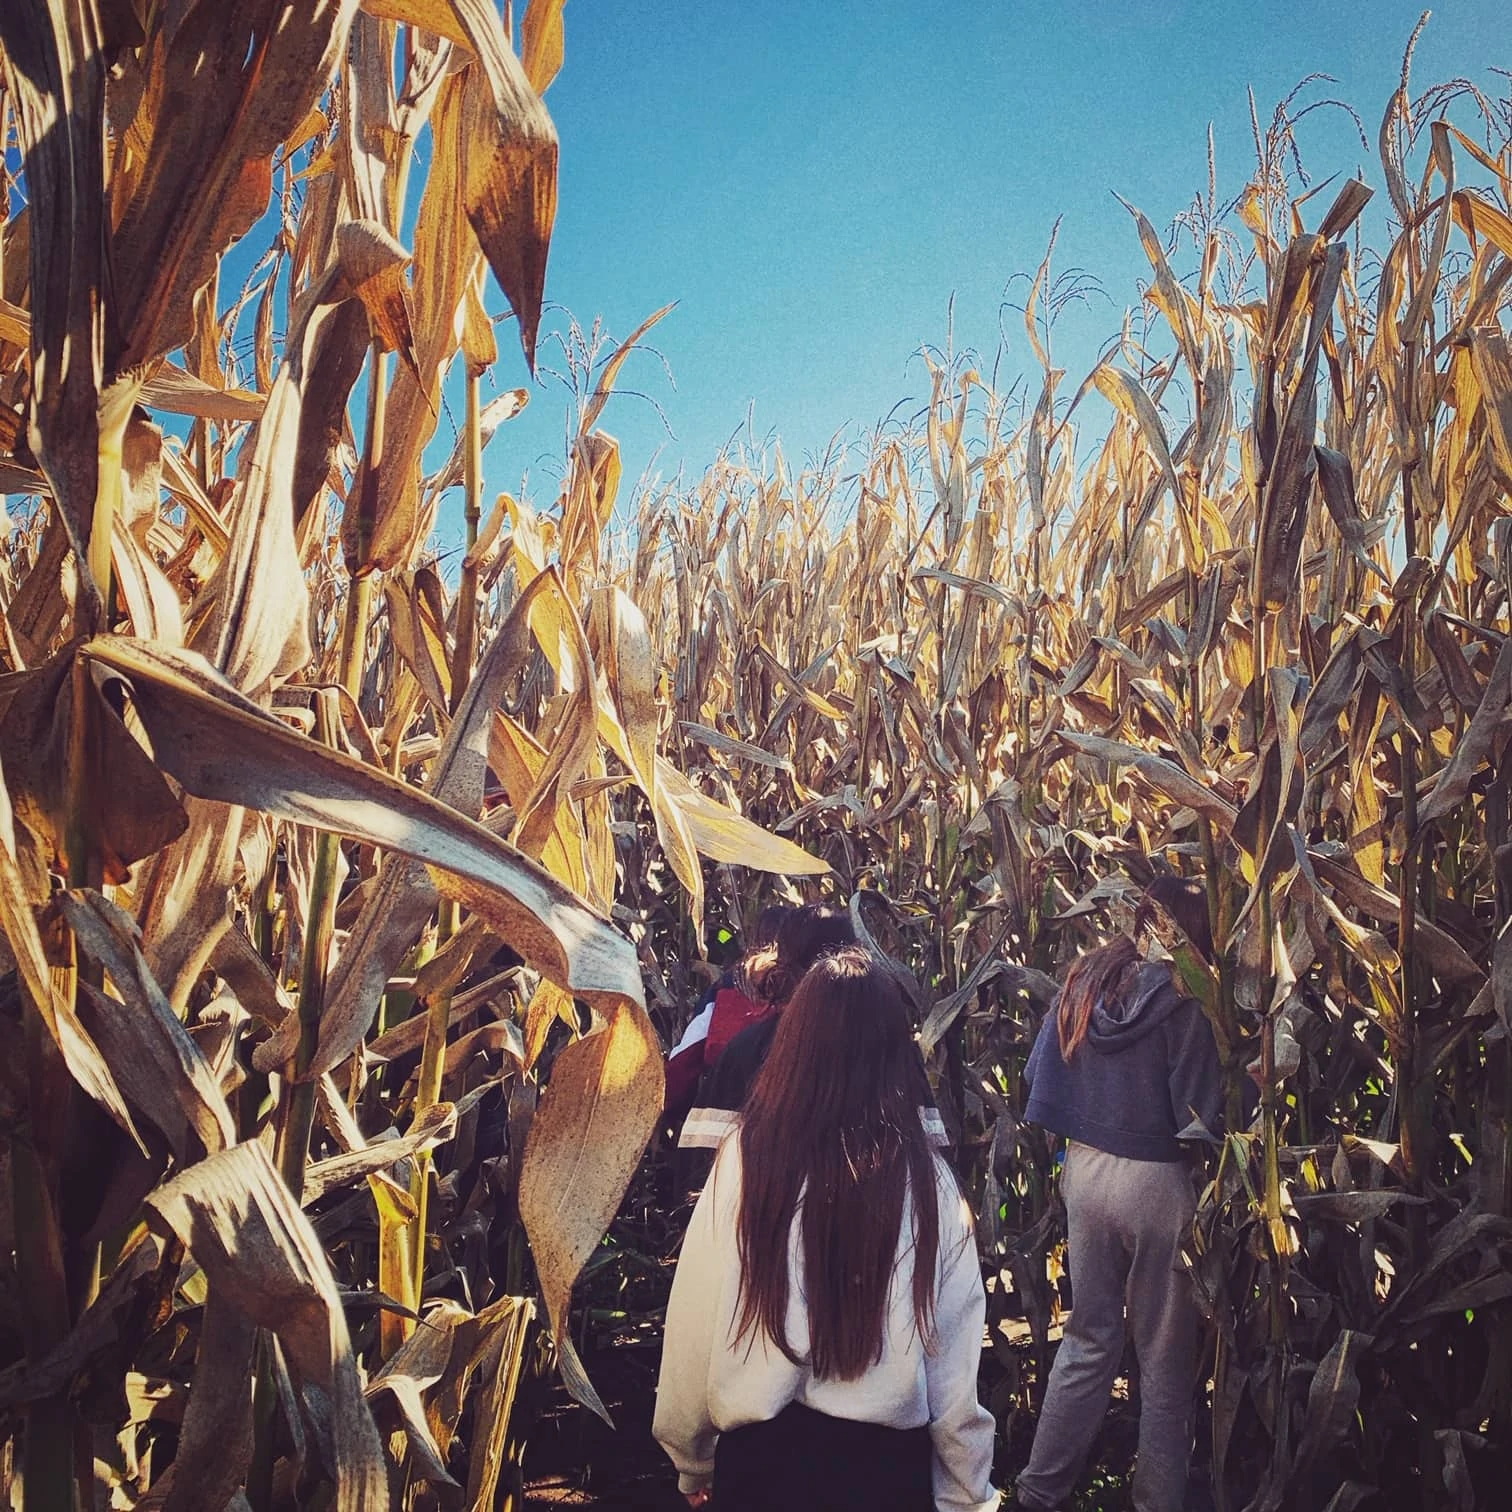 Corn Maze at Carpinito Farms